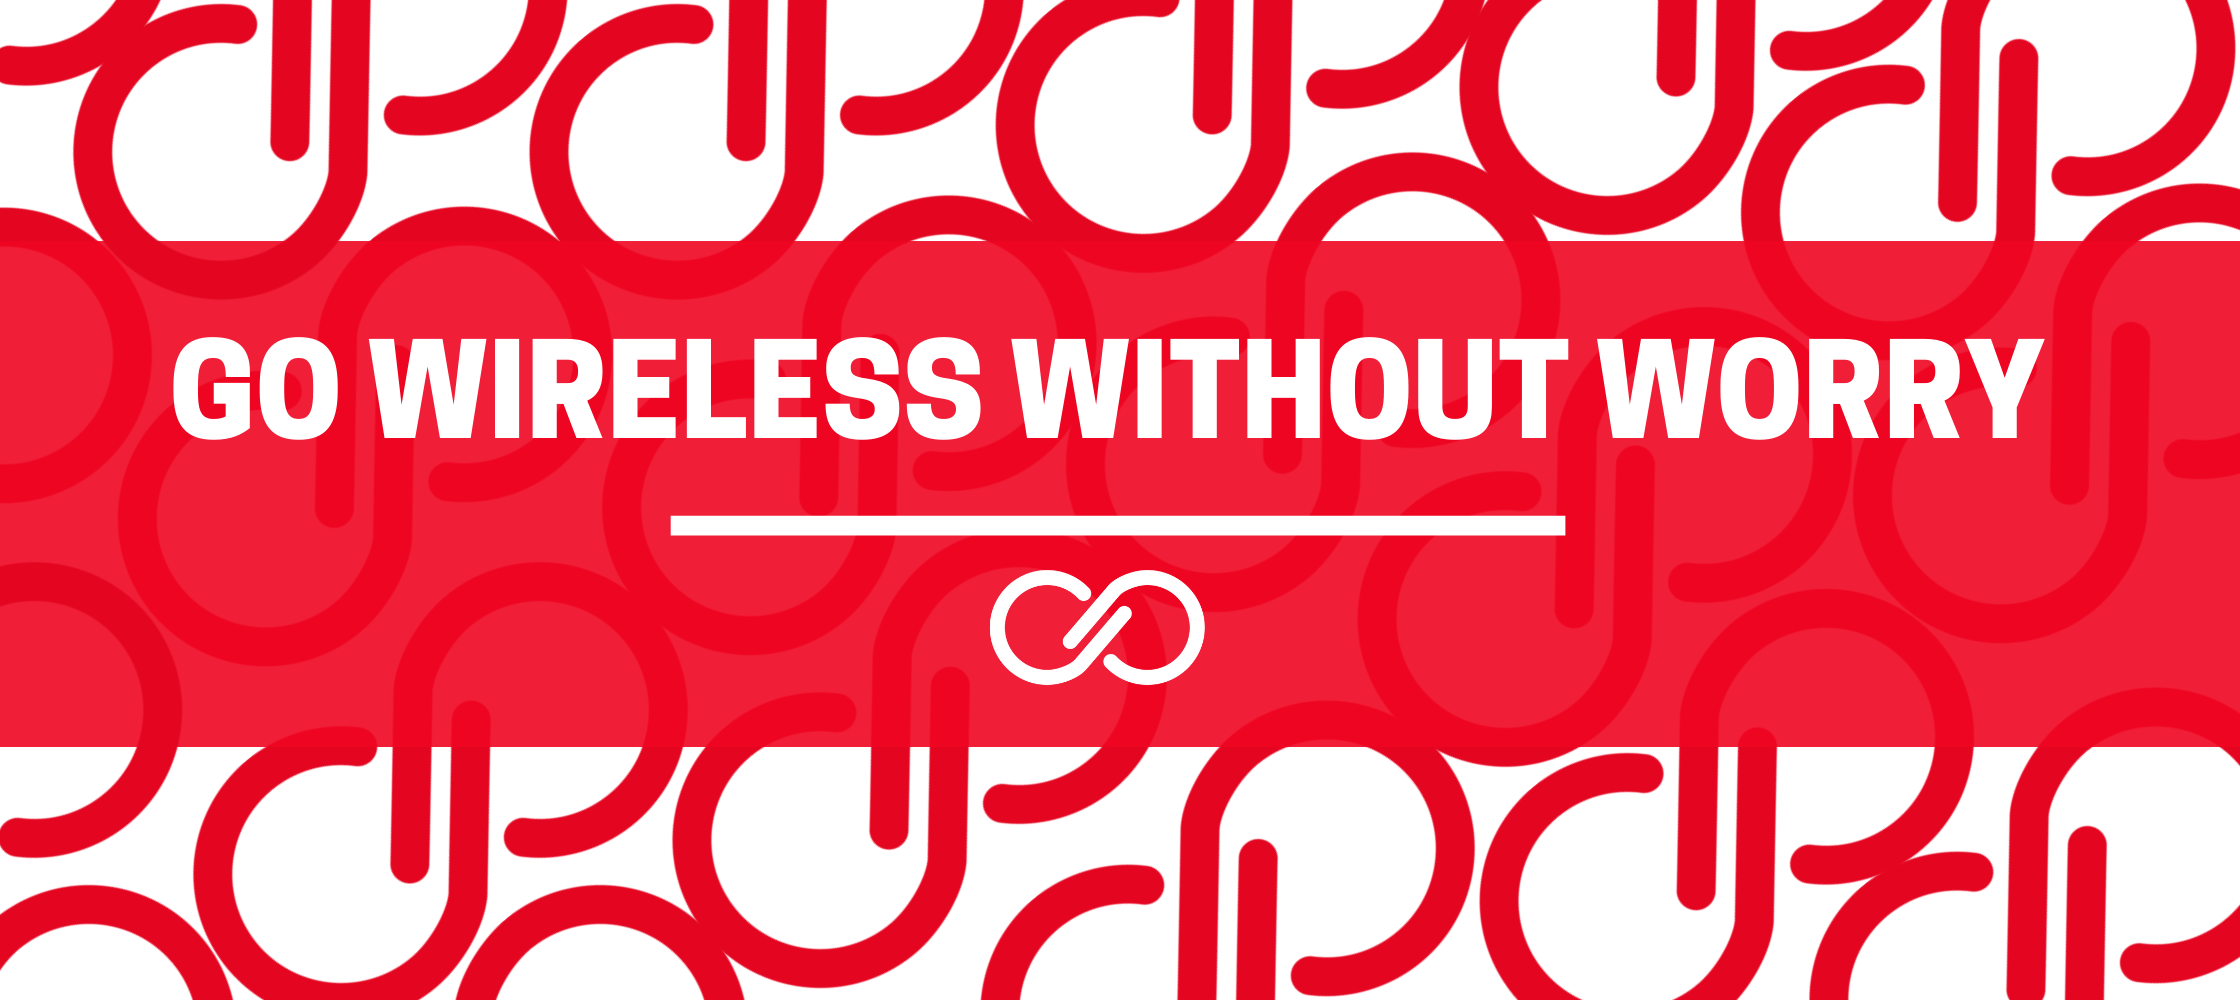 Go Wireless Without Worry 